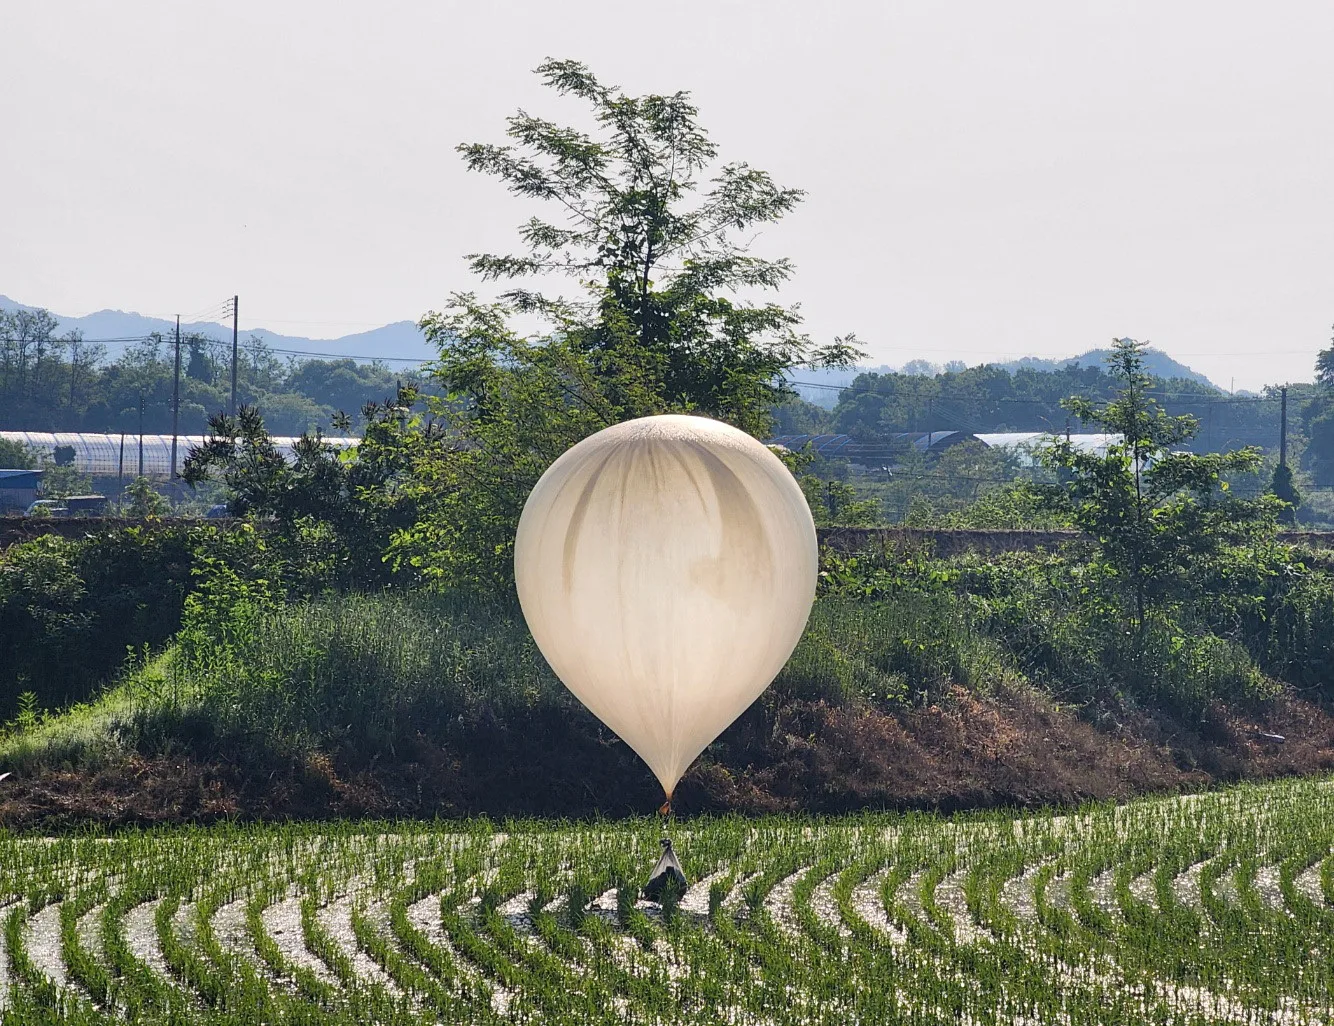 Seul alerta população sobre mais balões de lixo sendo enviados da Coreia do Norte